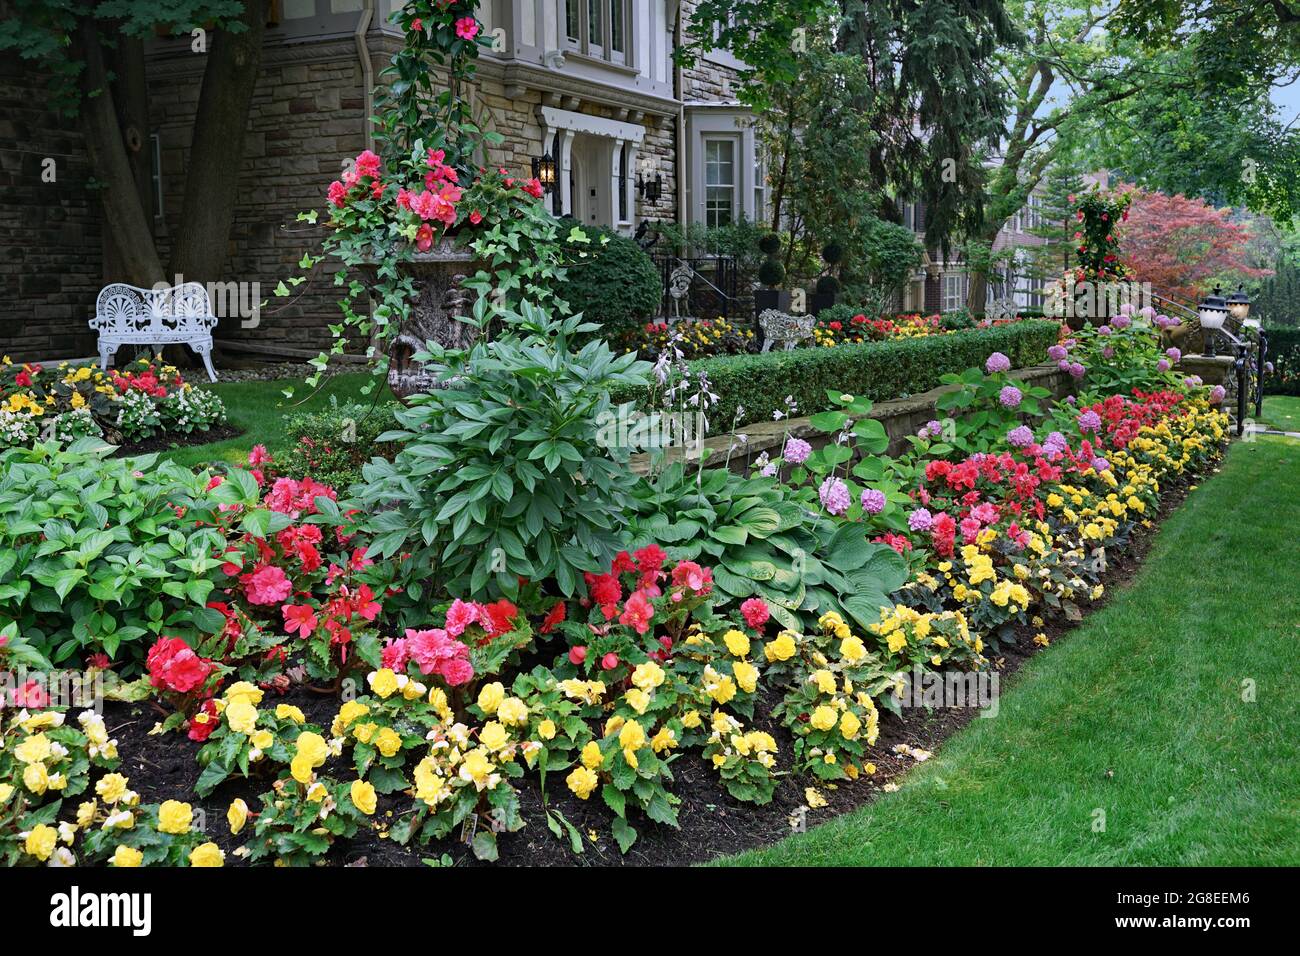 Garten des Hauses mit attraktiven Landschaftsgestaltung, gelbe und rote Begonien in einer Masse Pflanzen Stockfoto